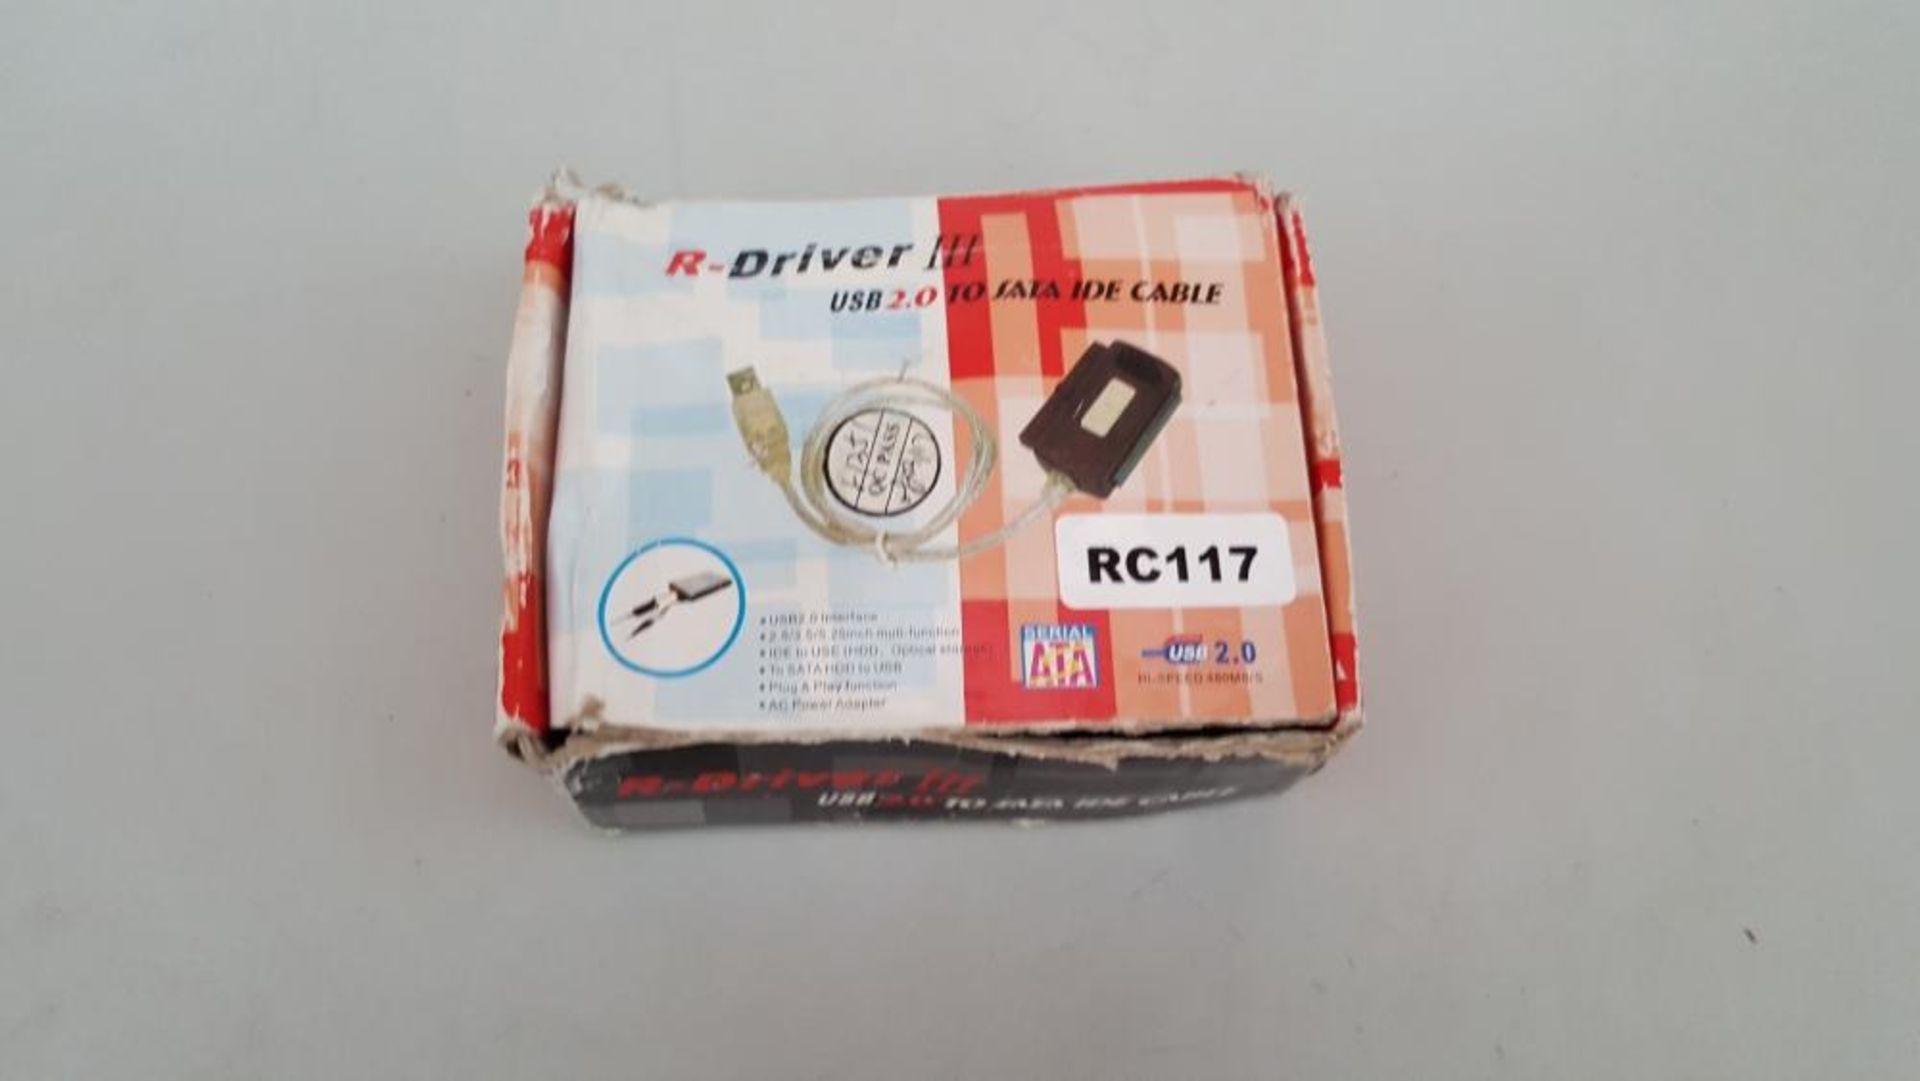 1 x R-Driver III USB 2.0 to SATA IDE Cable - Ref RC117 - CL011 - Location: Altrincham WA14 A